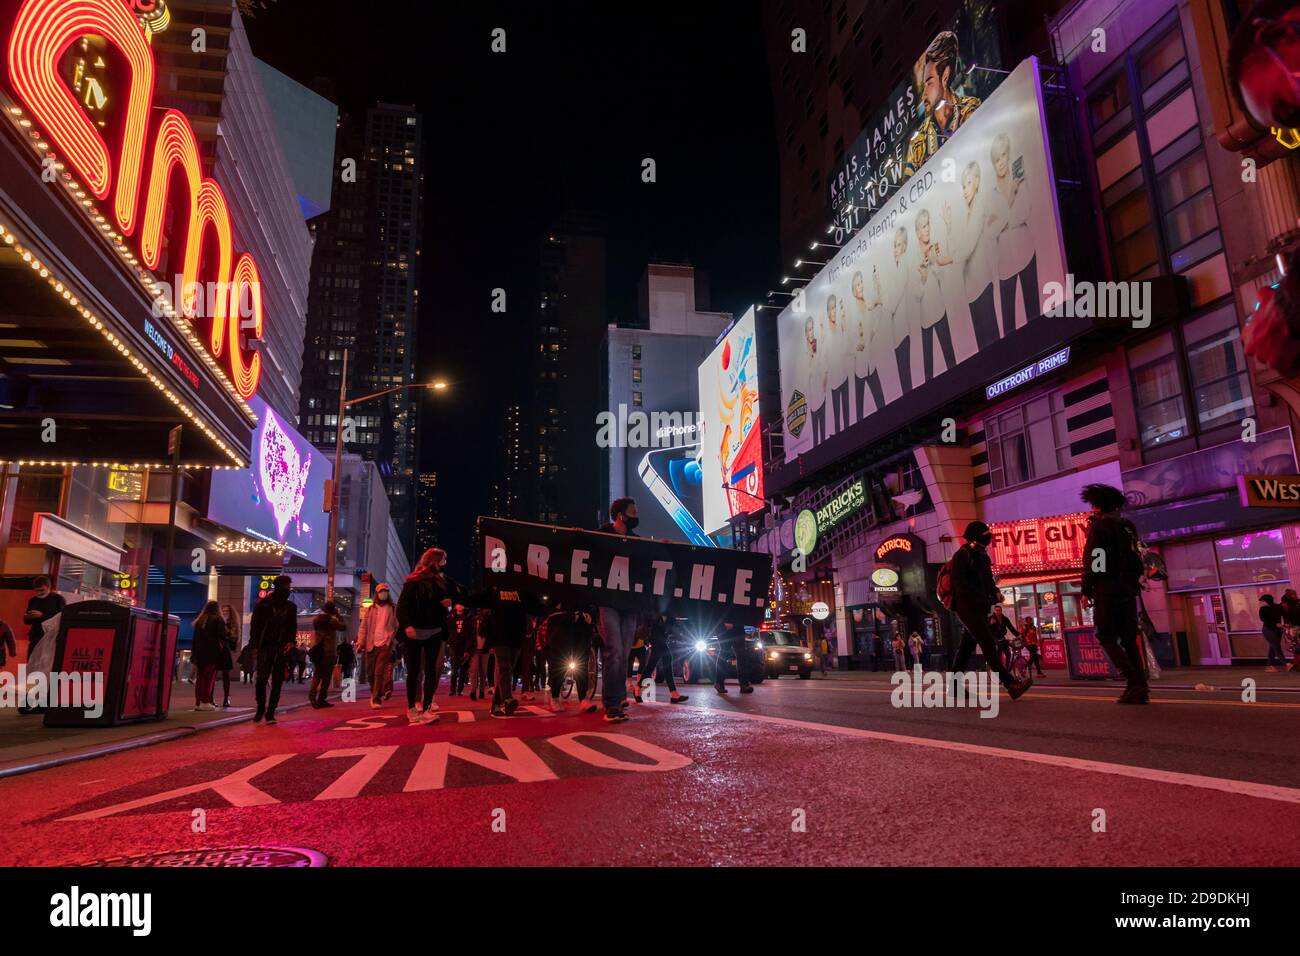 New York, NY - 4 novembre 2020: Membri di B.R.E.A.T.H. Walk sulla 42nd strada scortata da polive Foto Stock